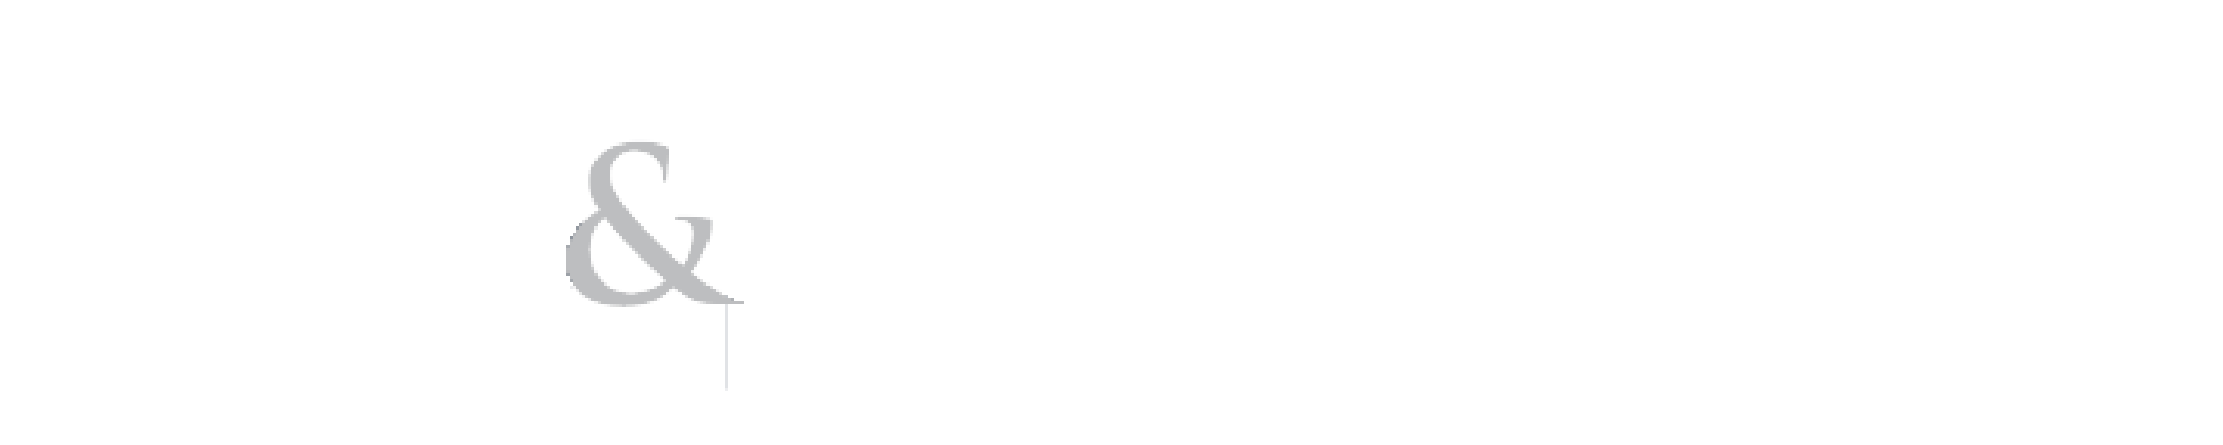 Gausnell's logo in white